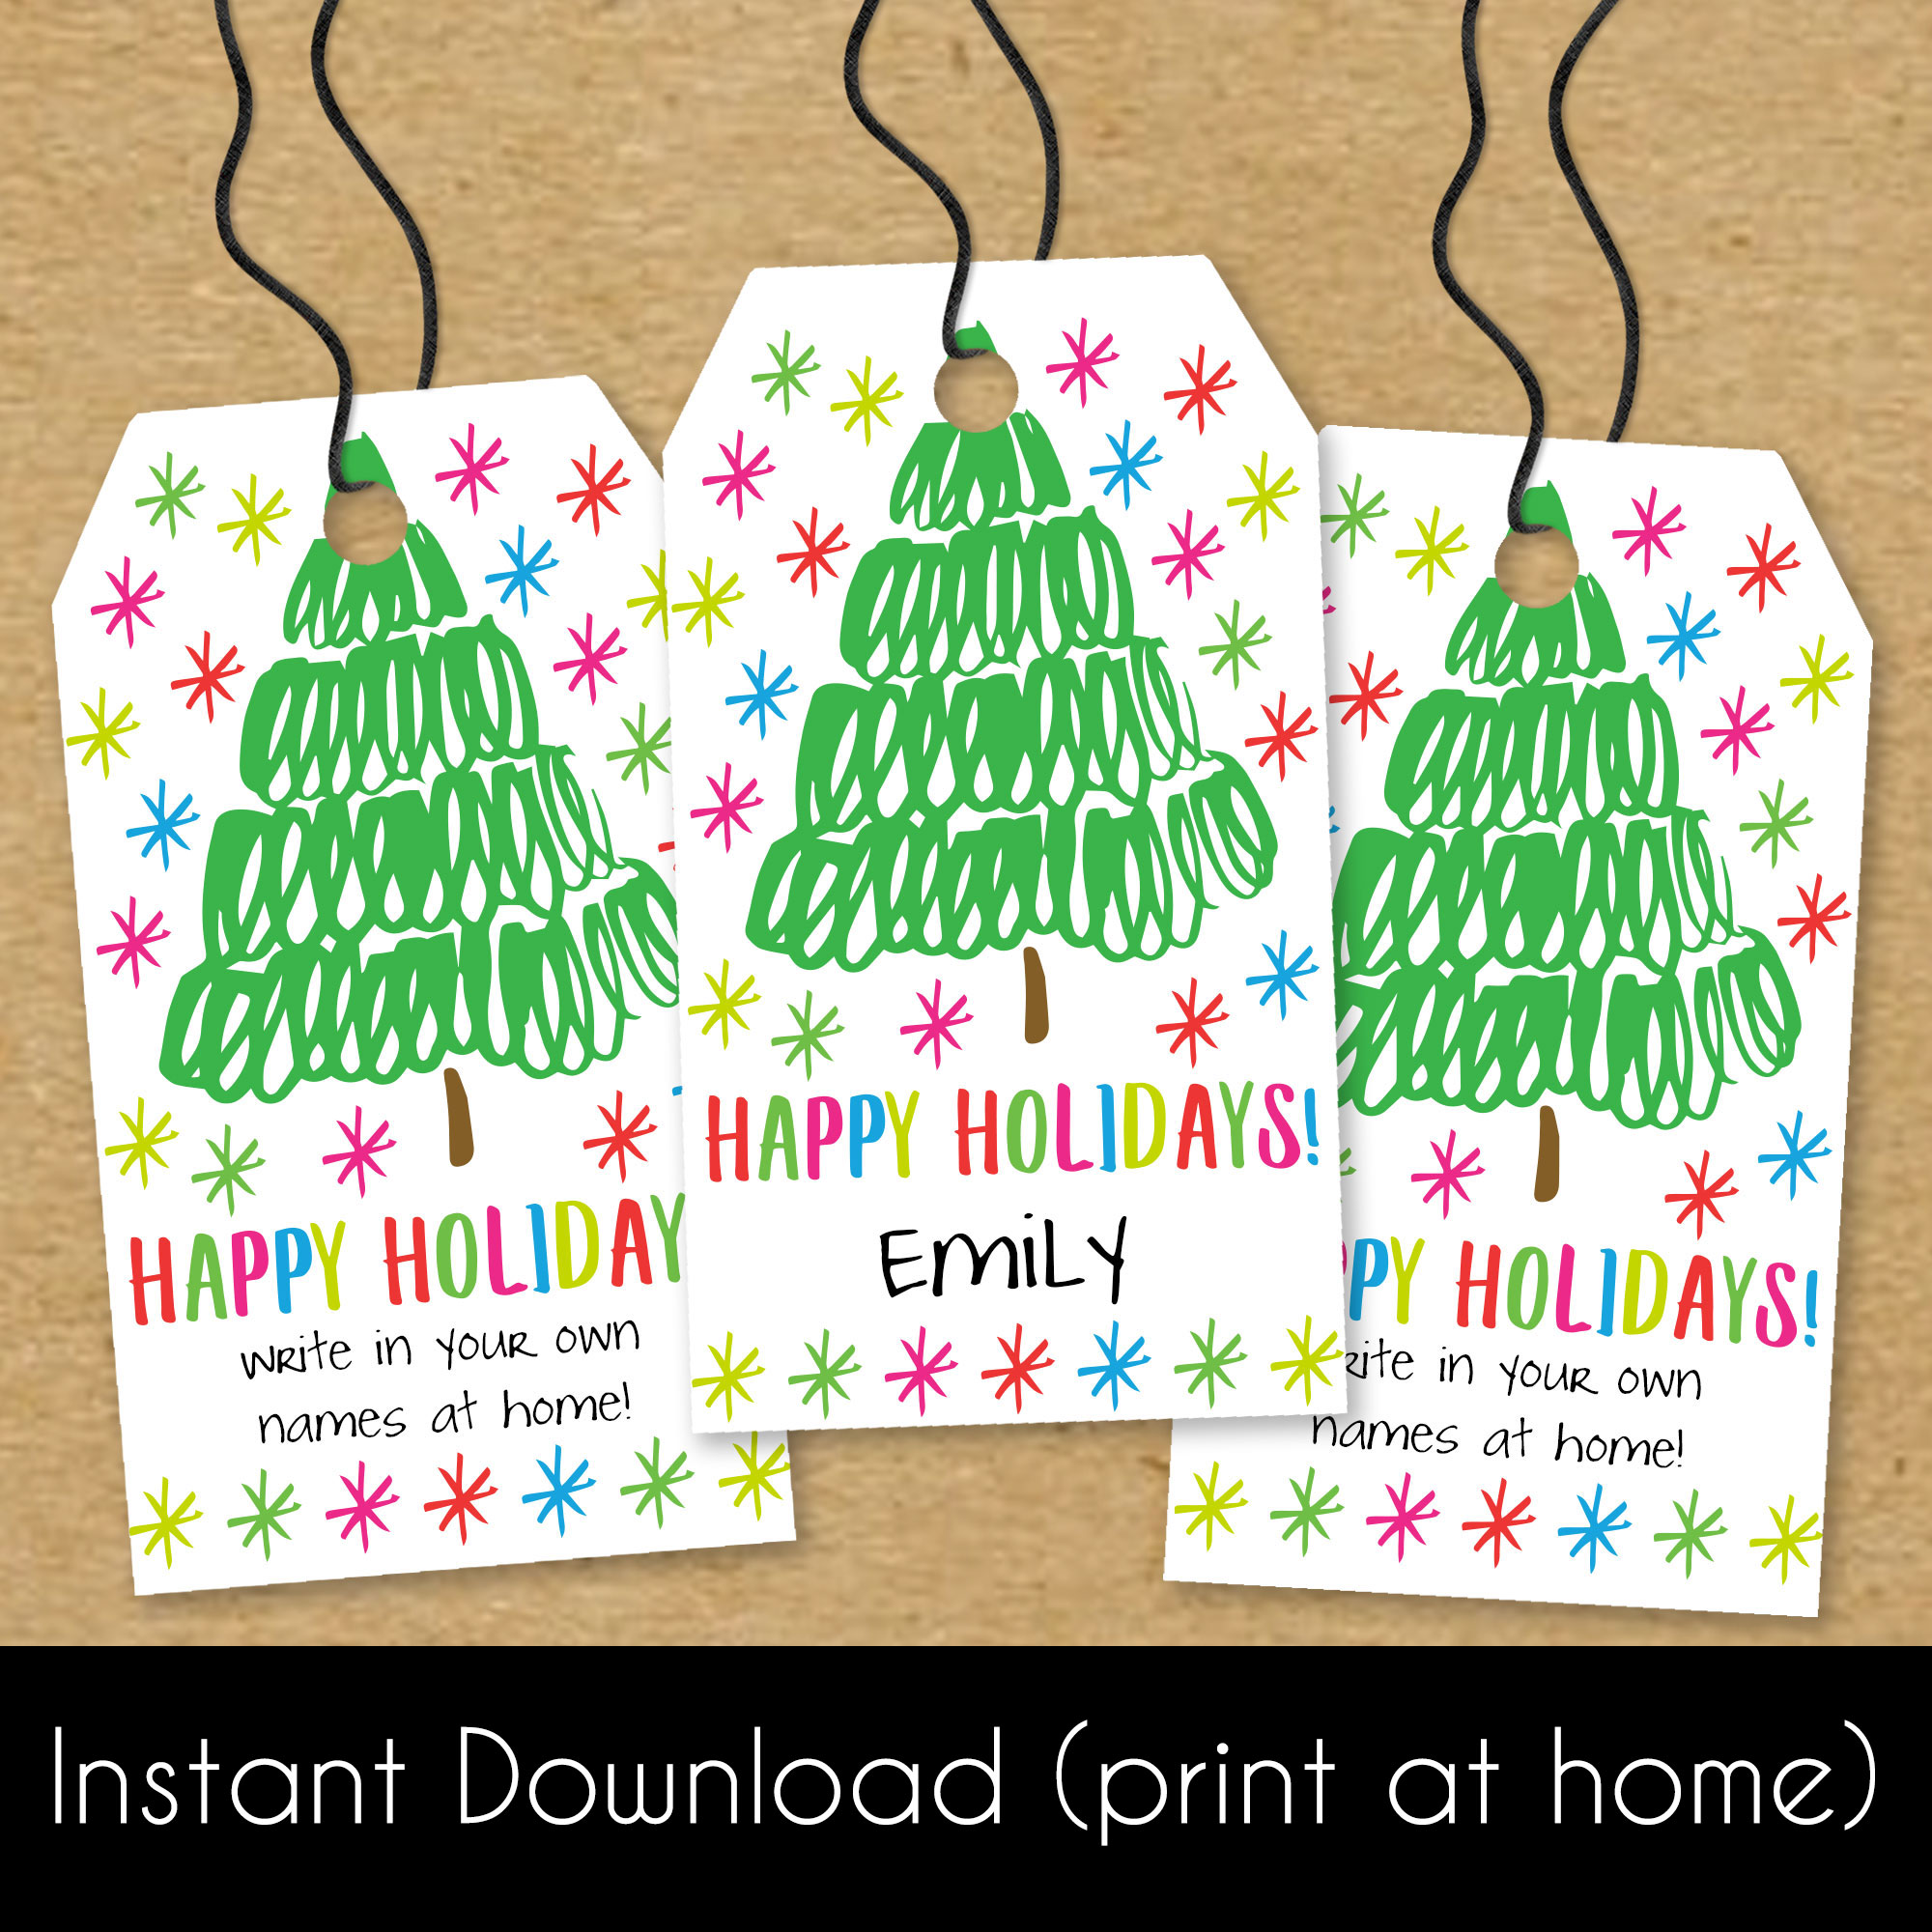 Printable Christmas Gift Tags, Christmas Labels, Red and Green Christm -  Sunshinetulipdesign